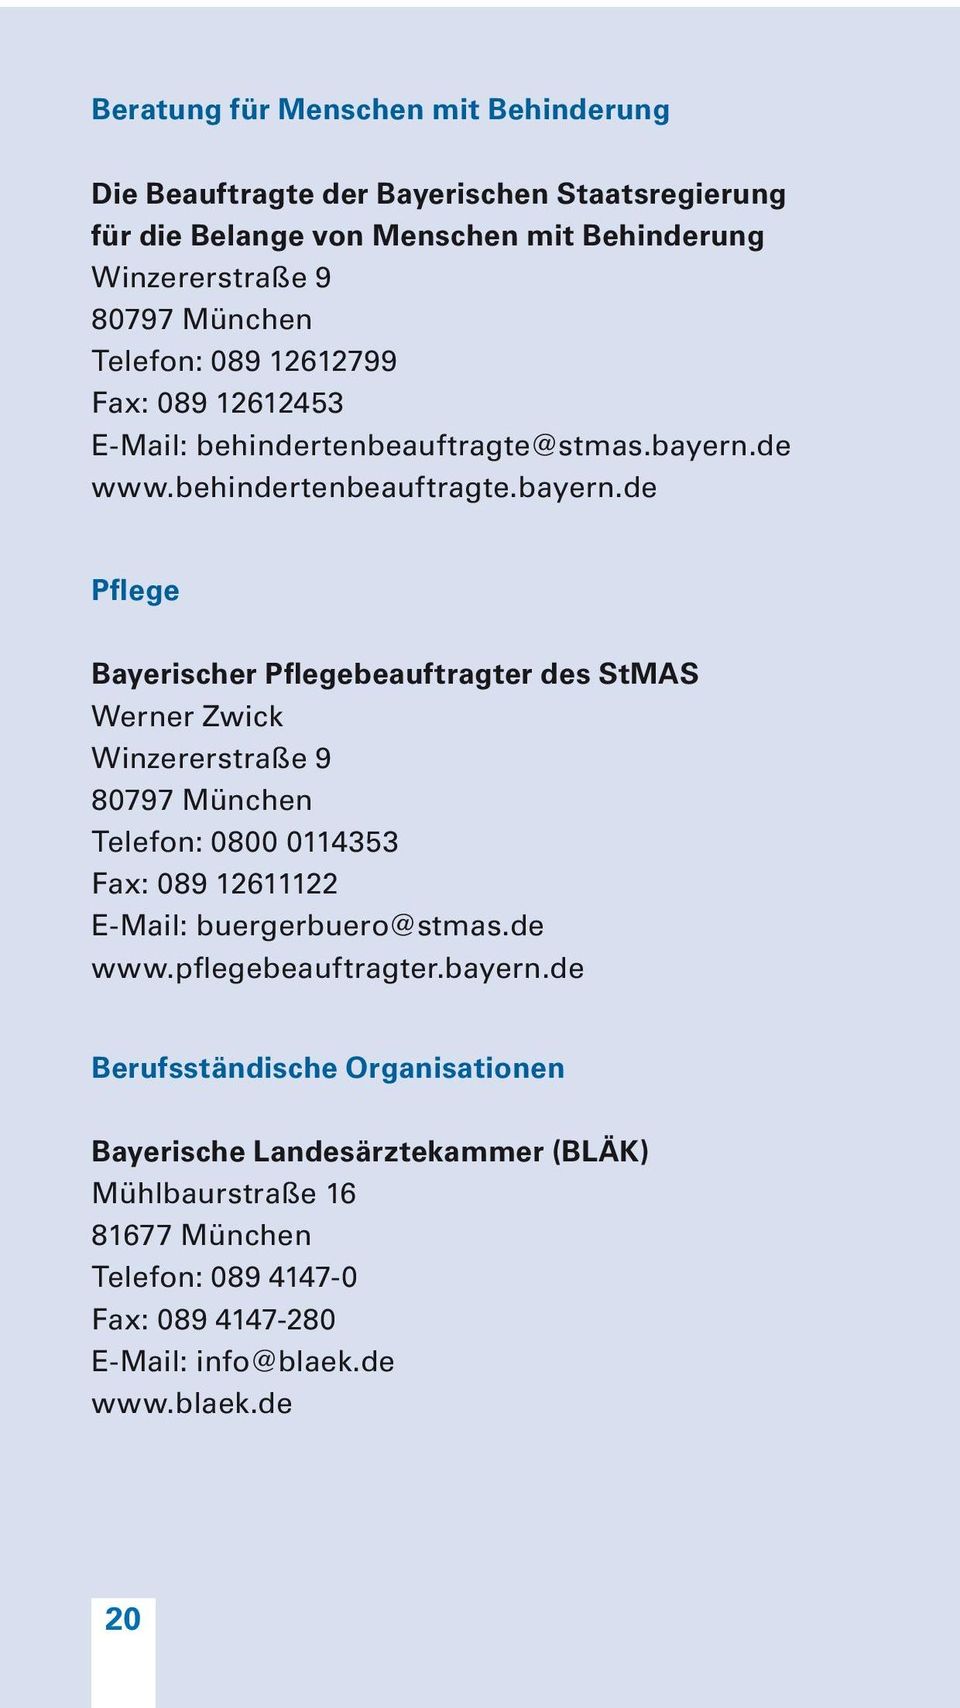 de www.behindertenbeauftragte.bayern.